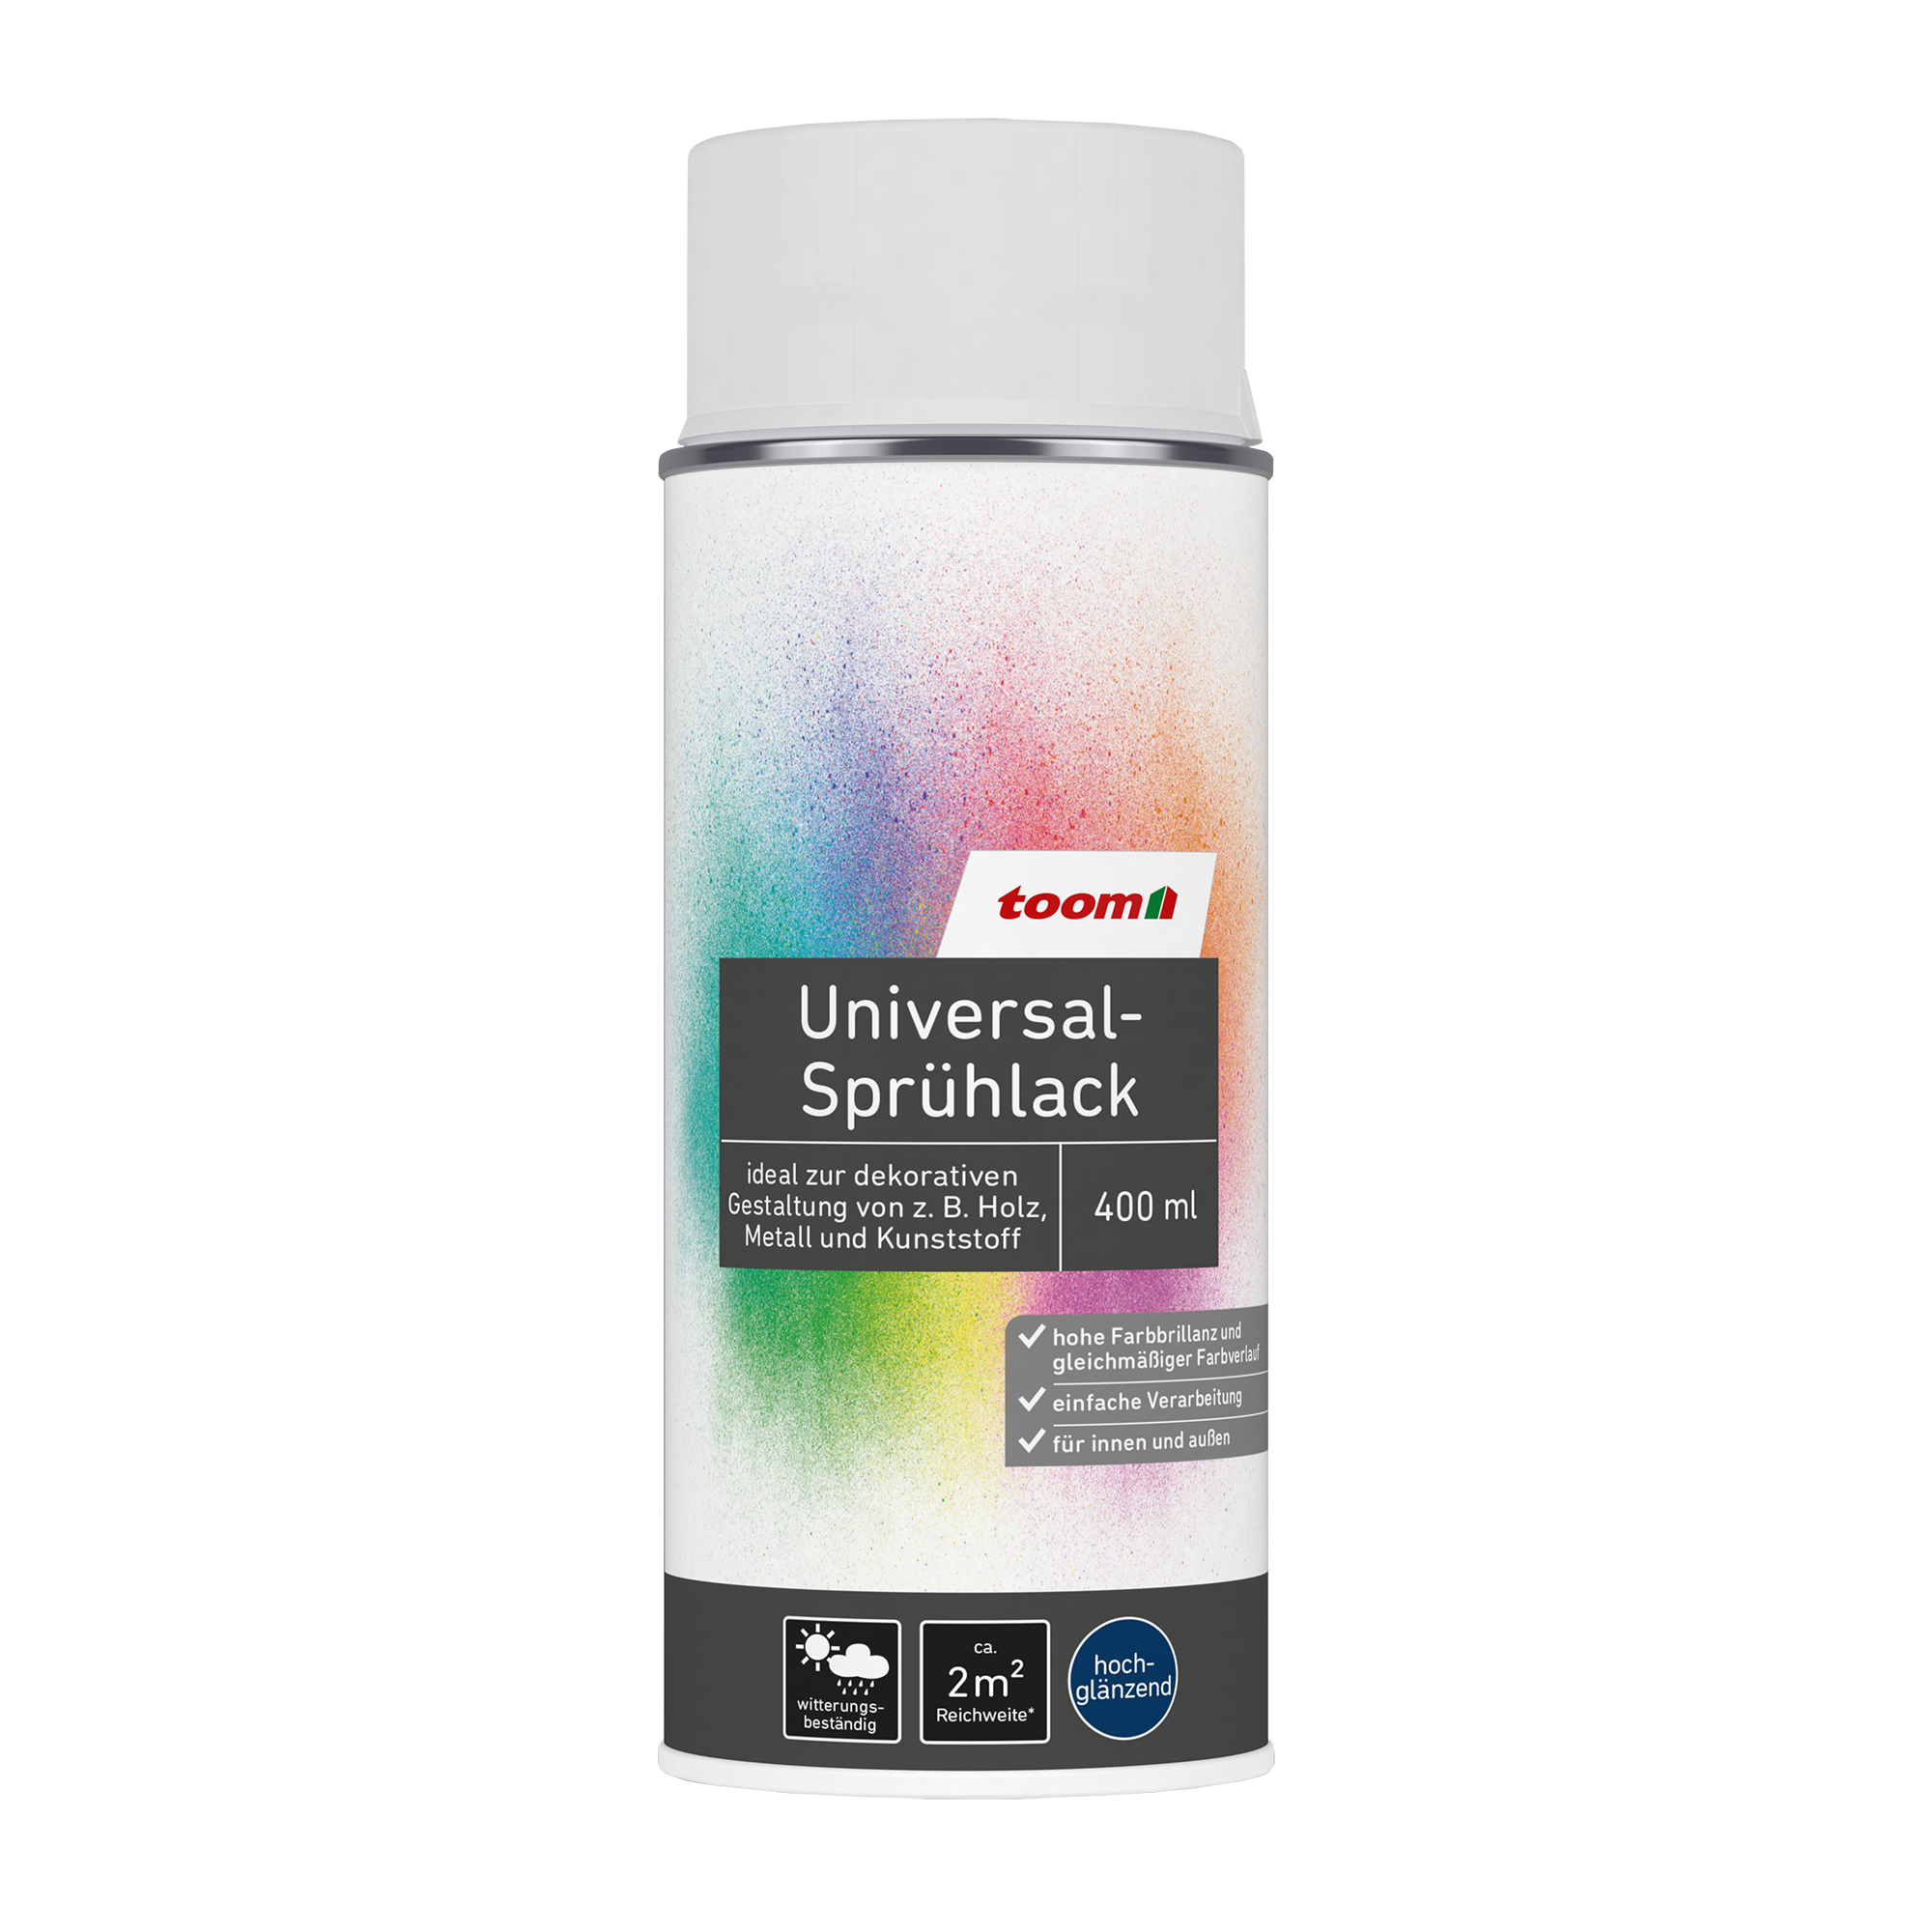 Universal-Sprühlack 'Eisblume' weiß glänzend 400 ml + product picture